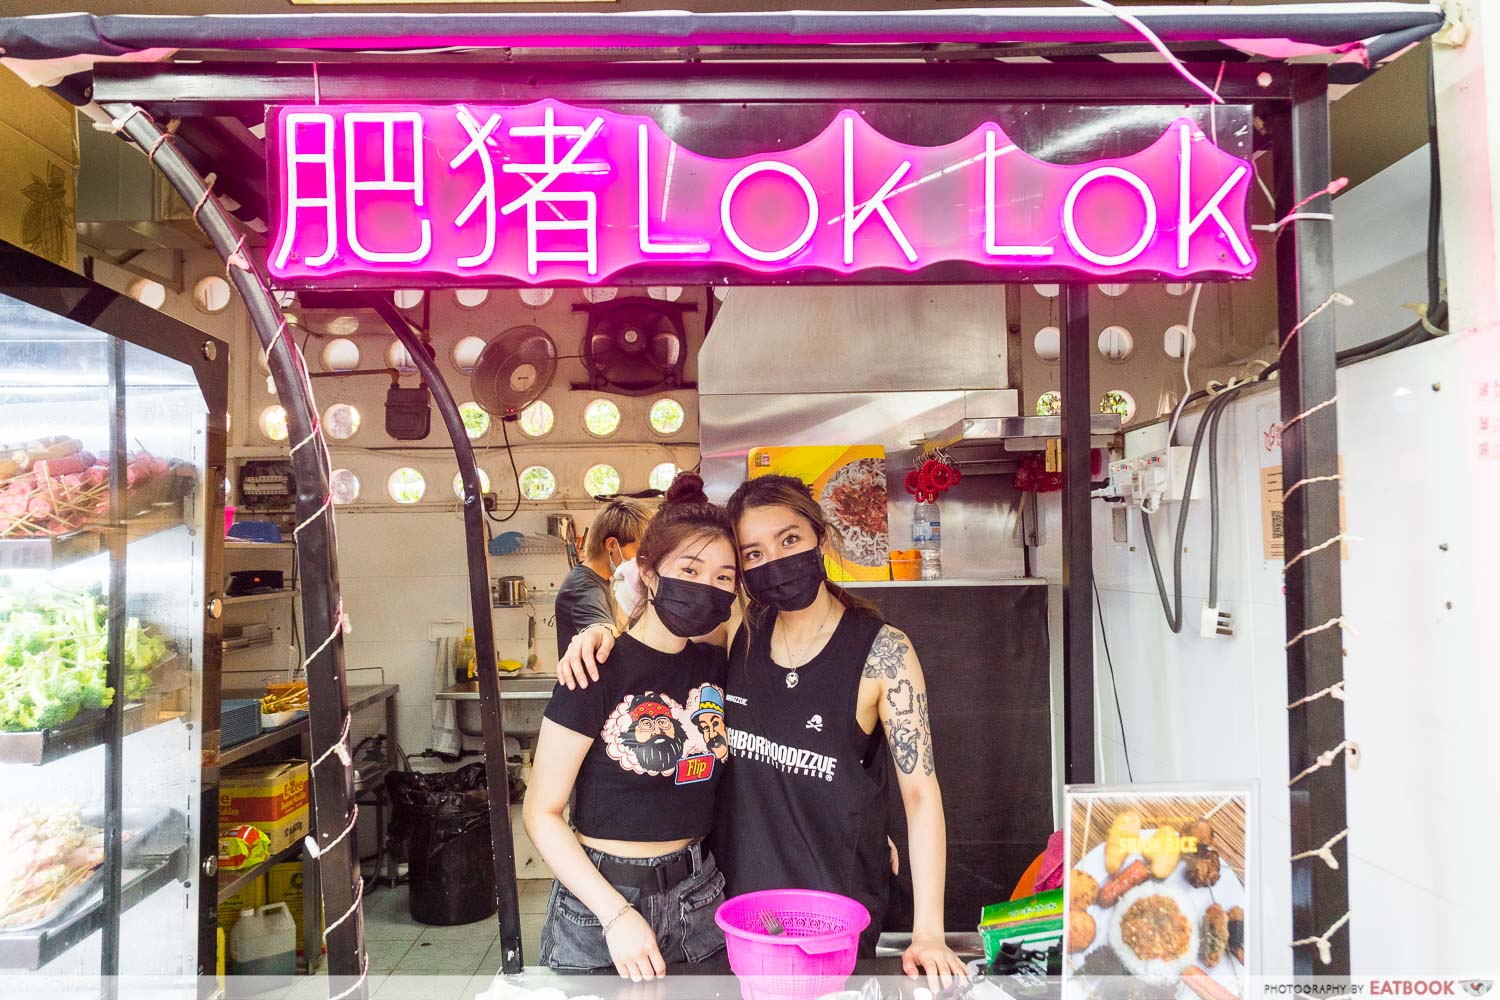 Lok Lok Singapore - Fei Zhu Lok Lok